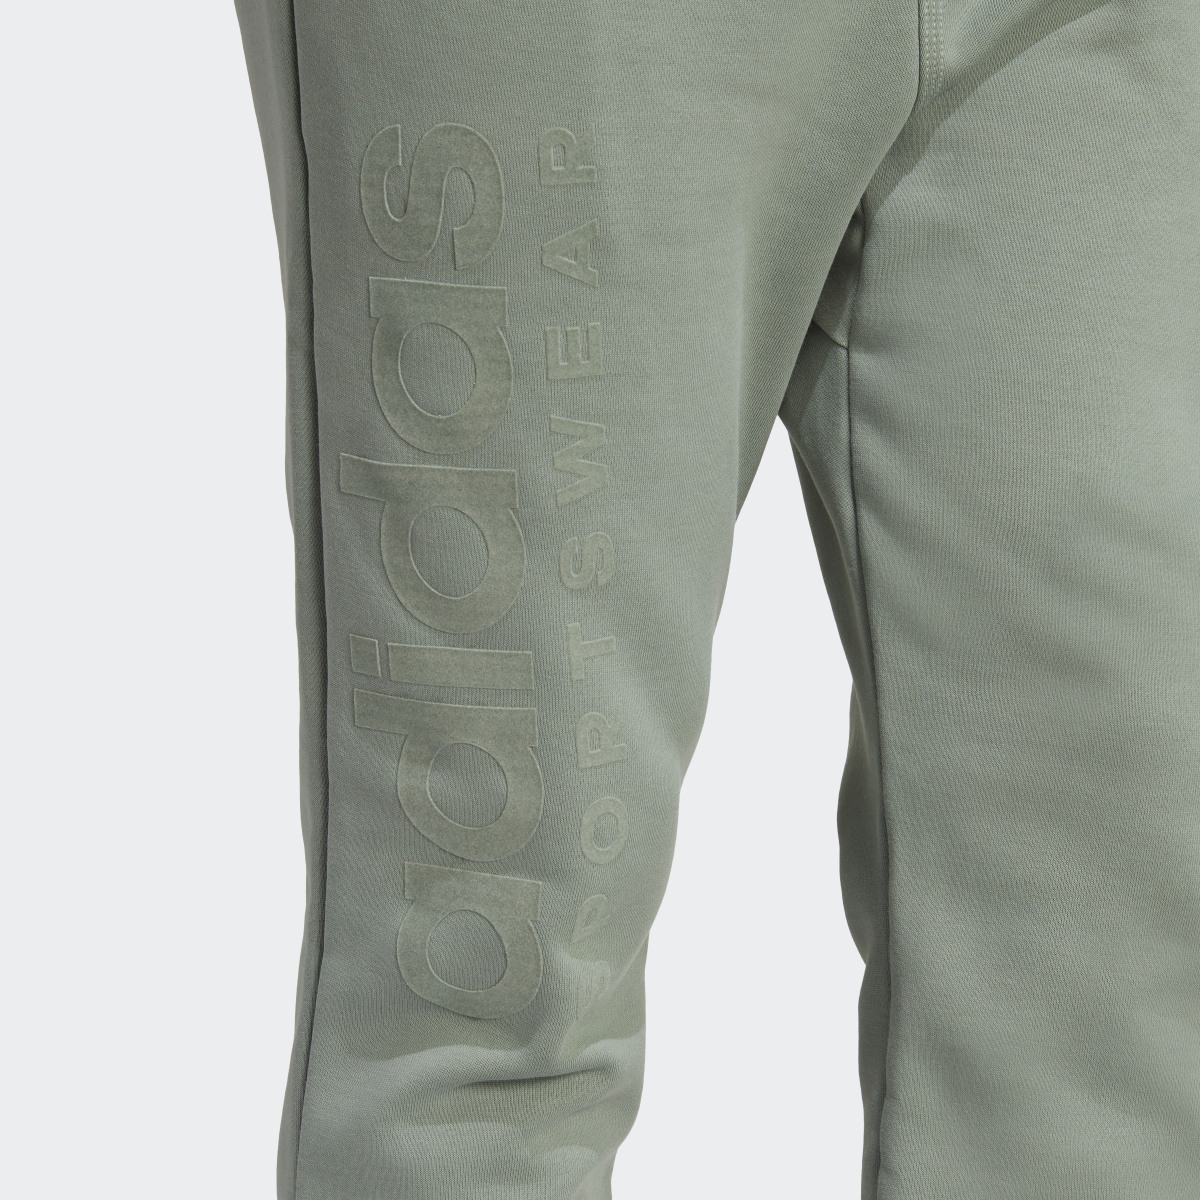 Adidas Lounge Fleece Pants. 6